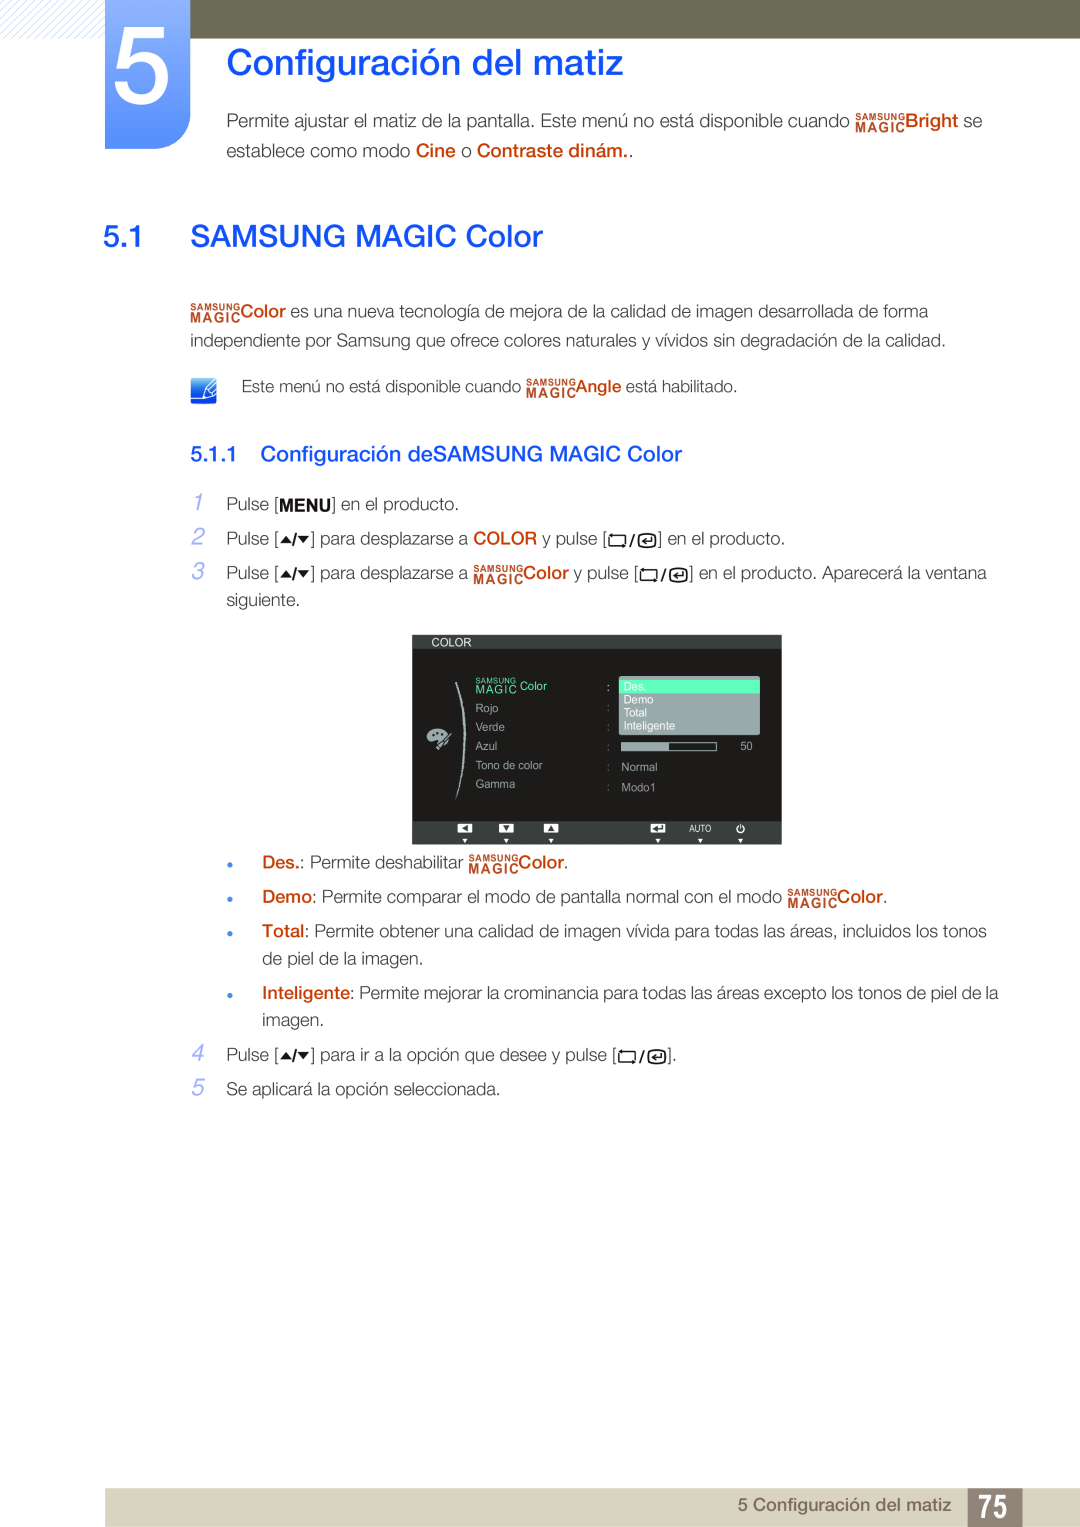 Samsung LF19TSCTBAN/EN, LF24TSCTBAN/EN, LF22TSCTBAN/EN Configuración del matiz, Configuración deSAMSUNG MAGIC Color 